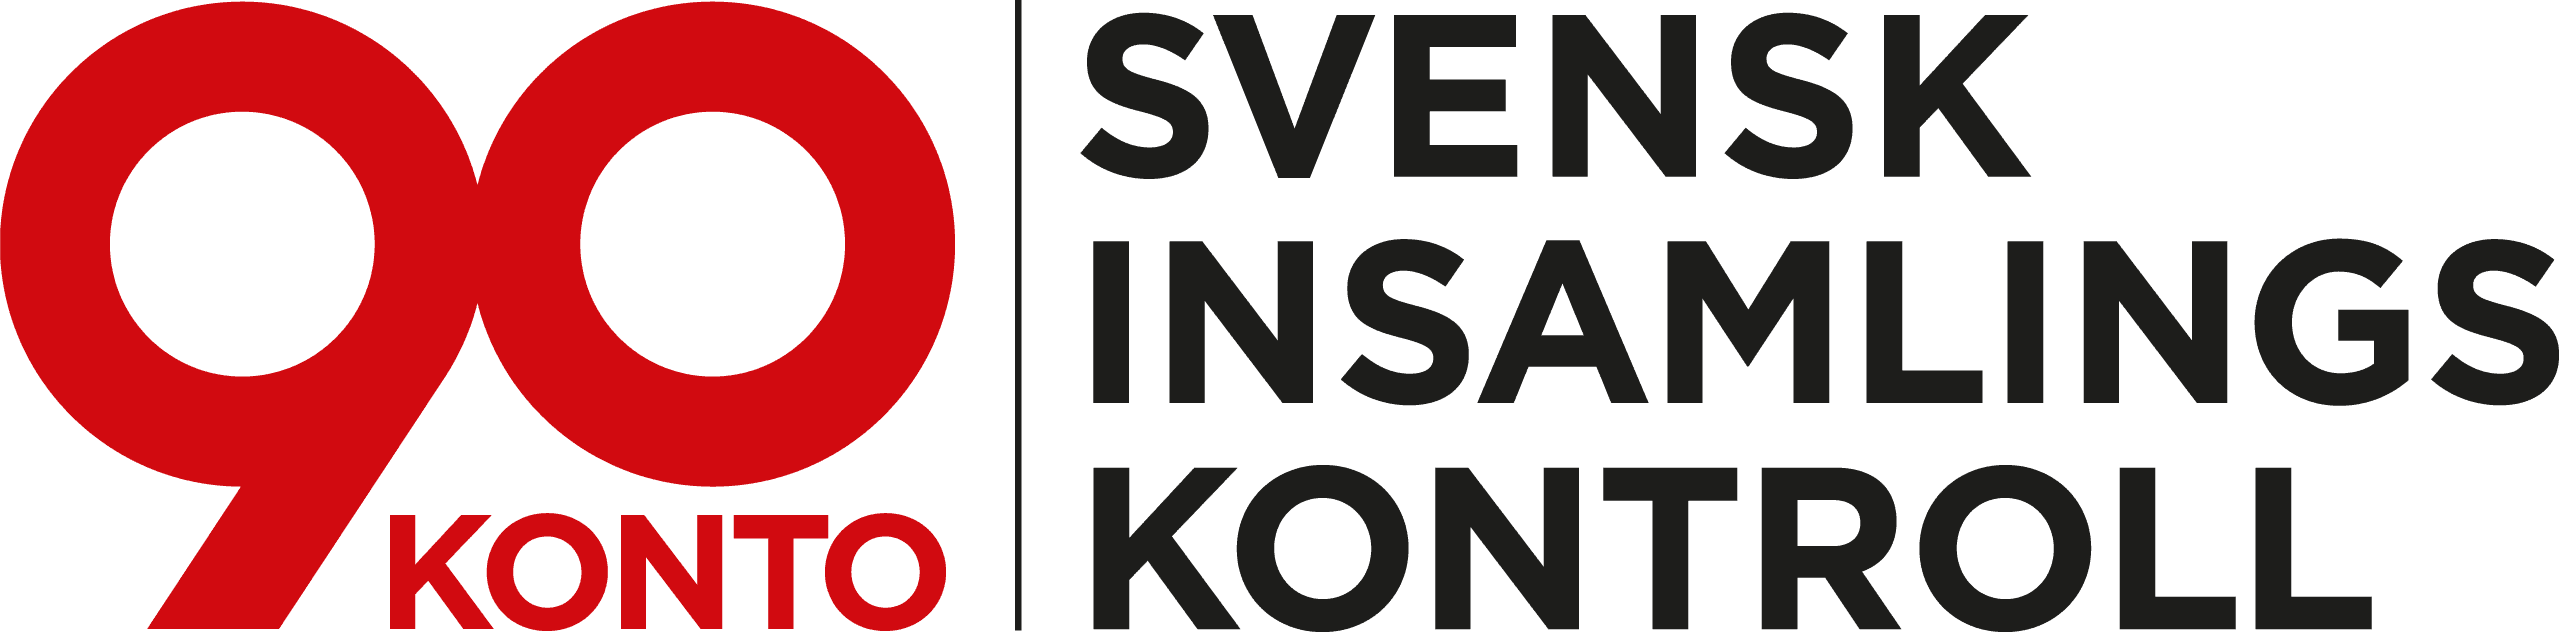 Logotype för 90-konto Svensk insamlingskontroll